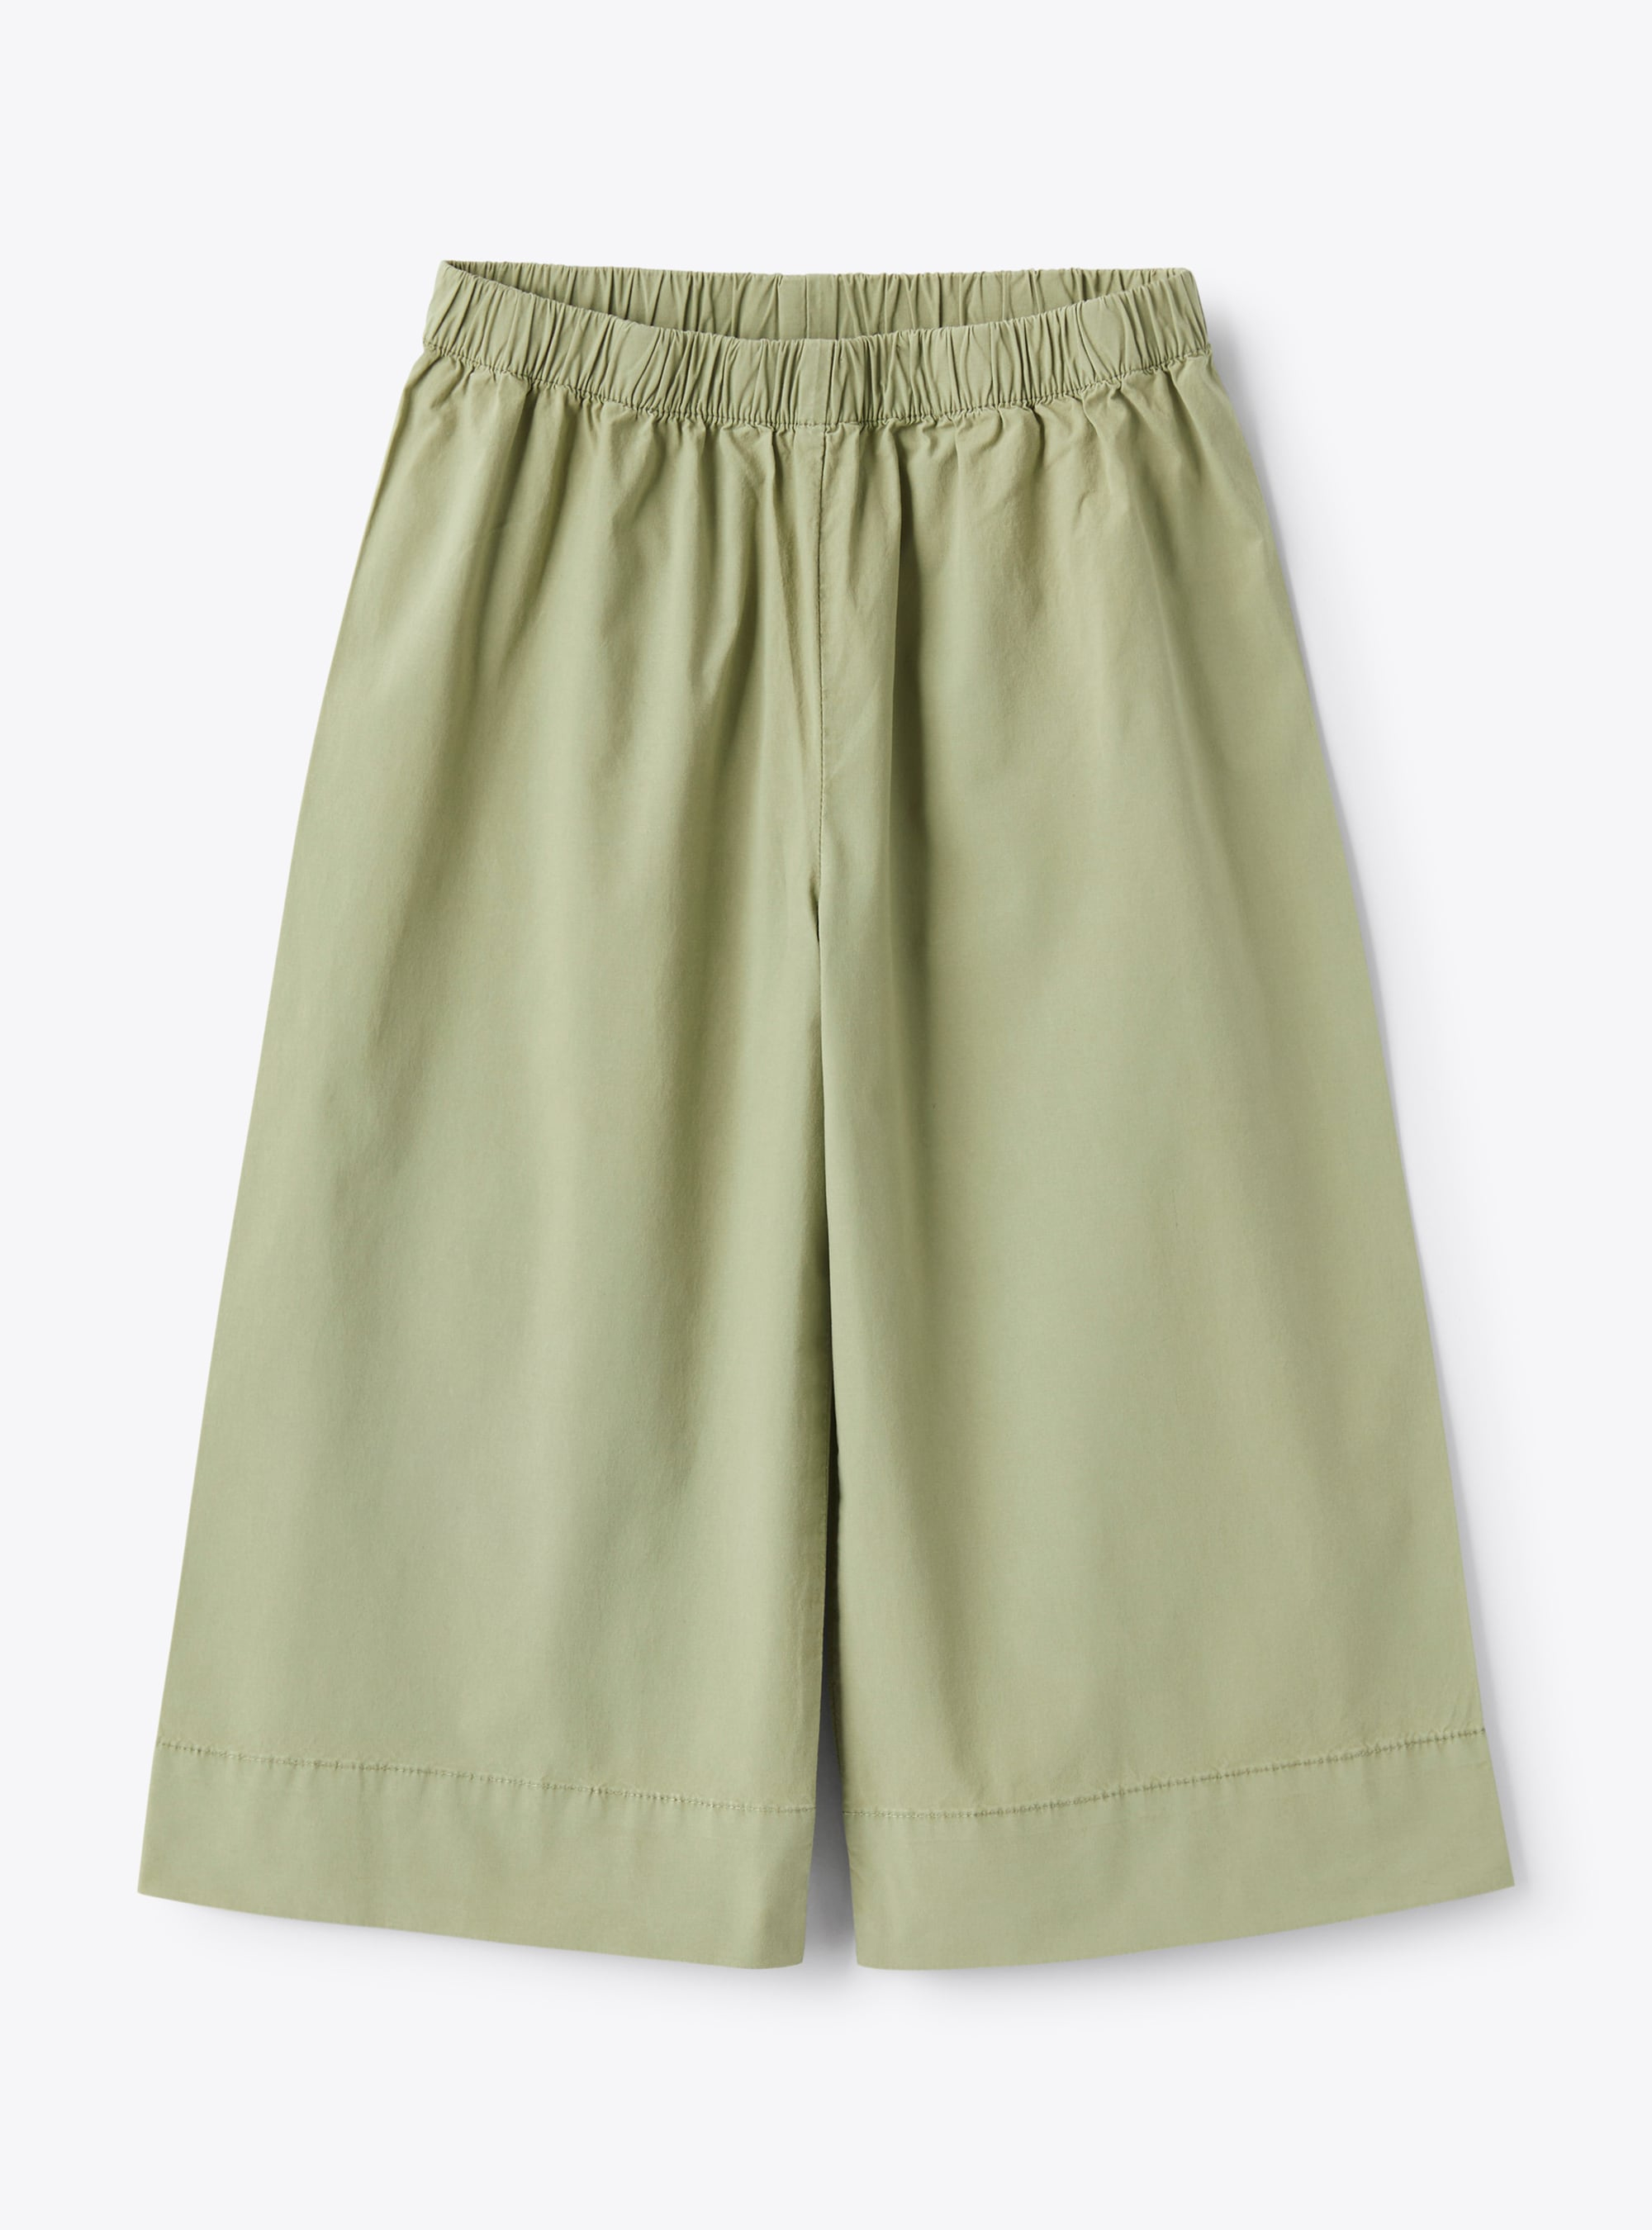 Capri pants in stretch sage-green poplin - Green | Il Gufo